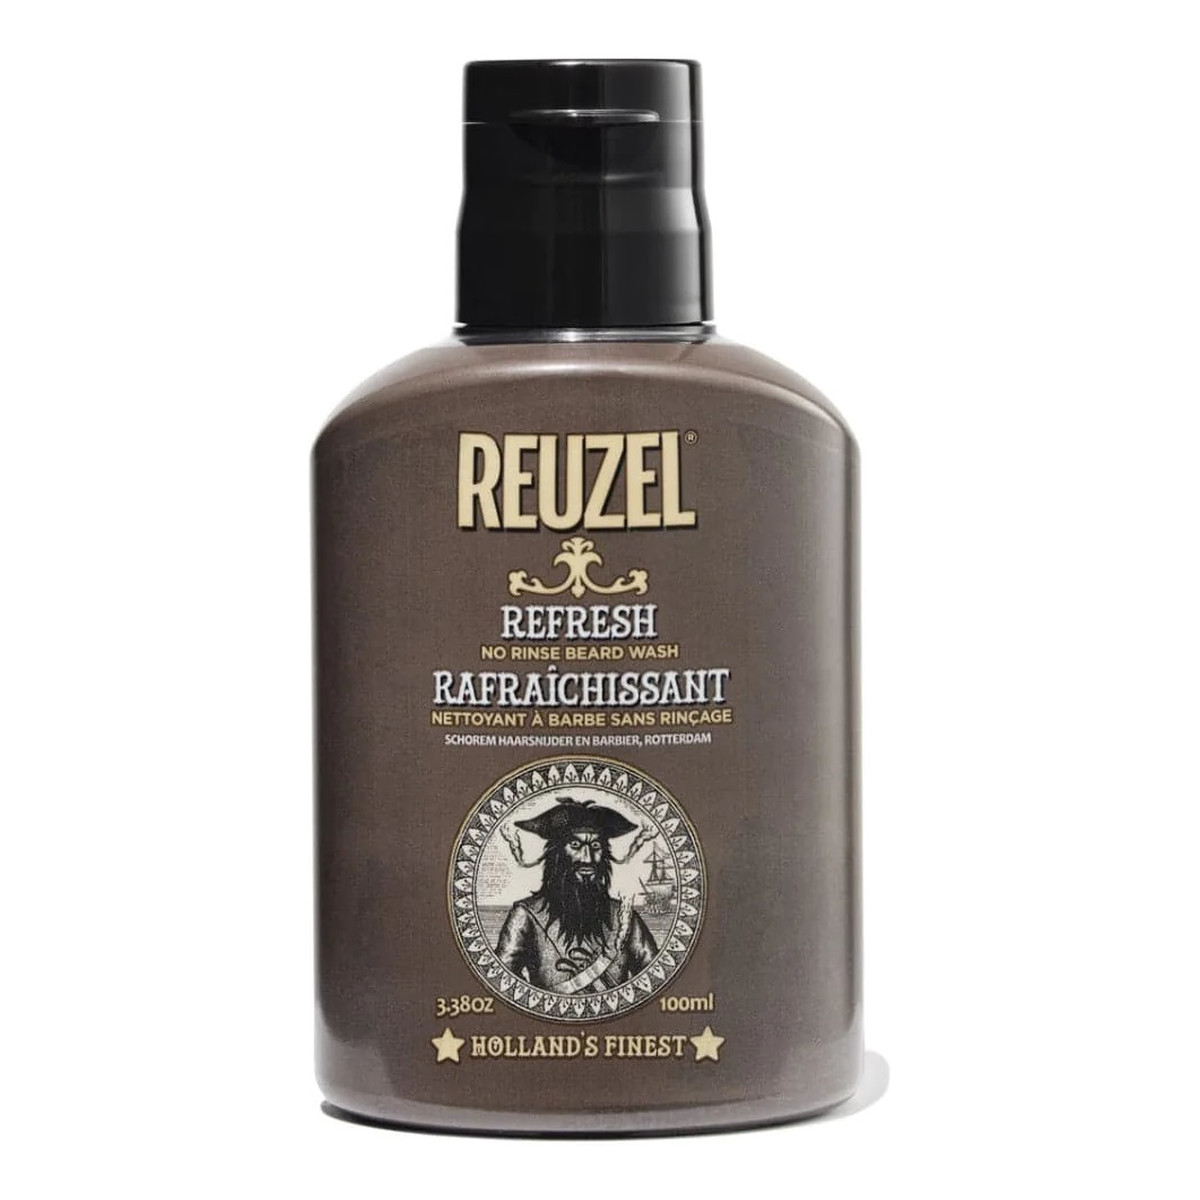 Reuzel No rinse beard wash suchy szampon do brody bez spłukiwania refresh 100ml